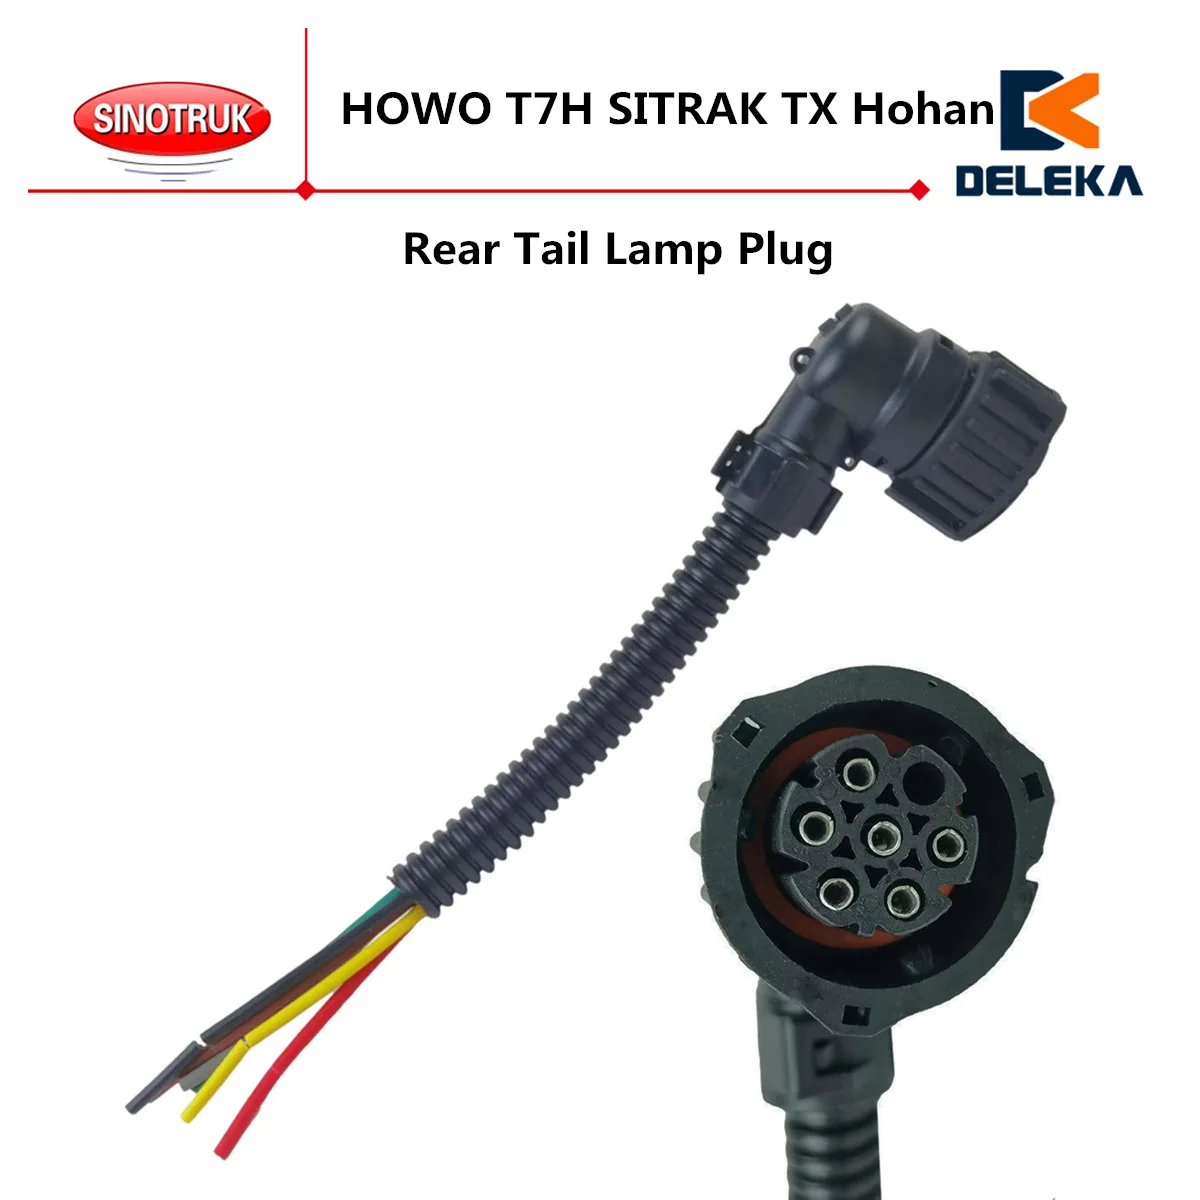 Цельнокроеный Штекер заднего фонаря, используемый Для жгута проводов CNHTC SINOTRUK HOWO Connector T7H SITRAK TX Hohan